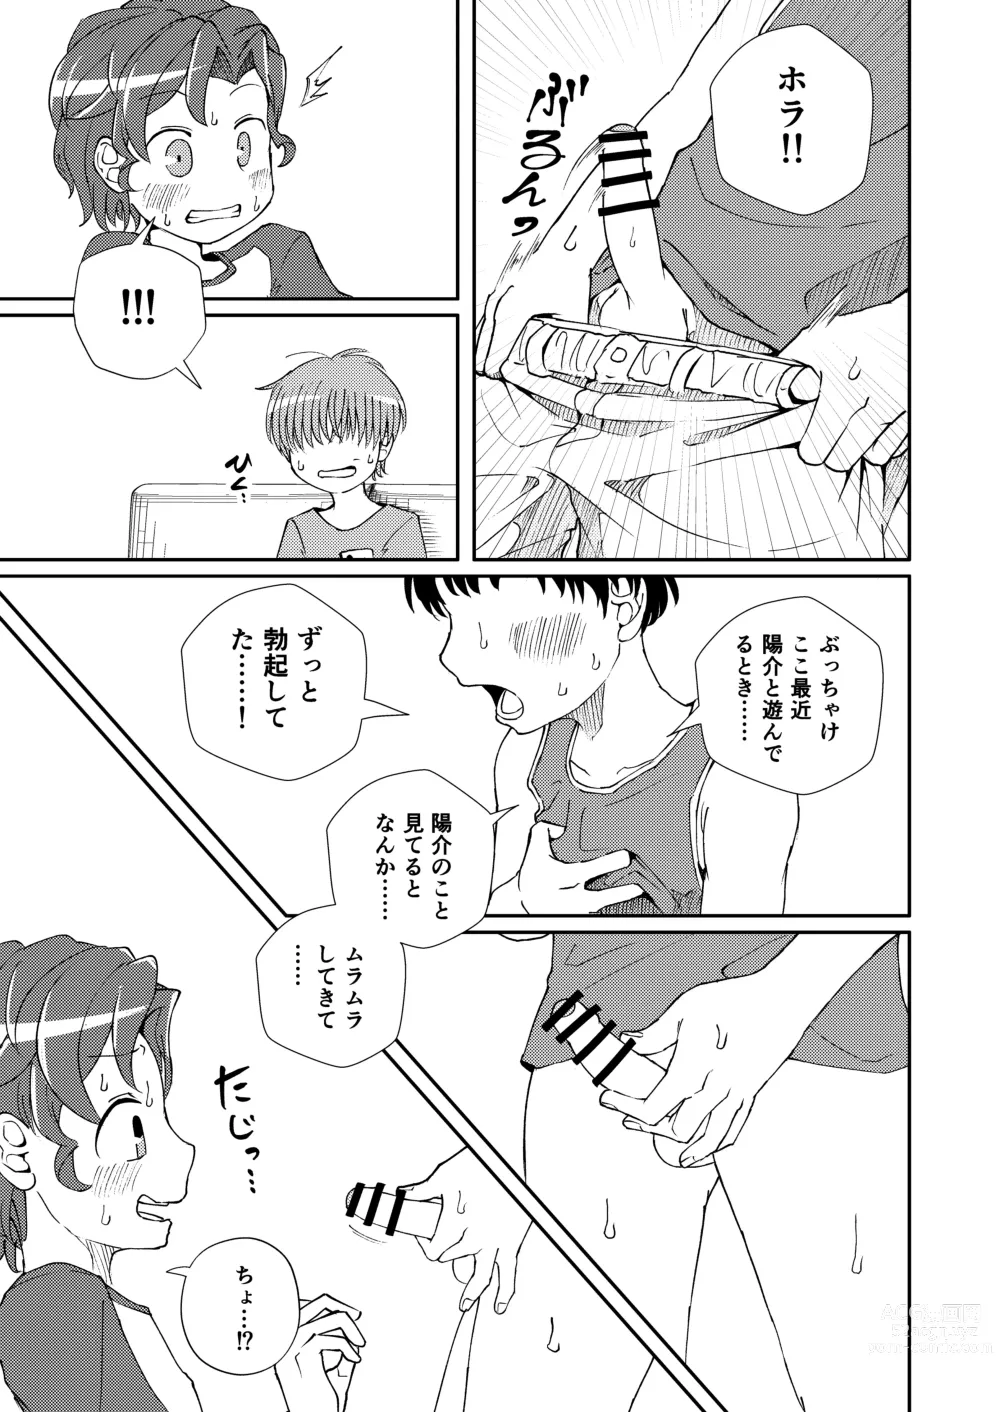 Page 11 of doujinshi Shoujiki Iu to,